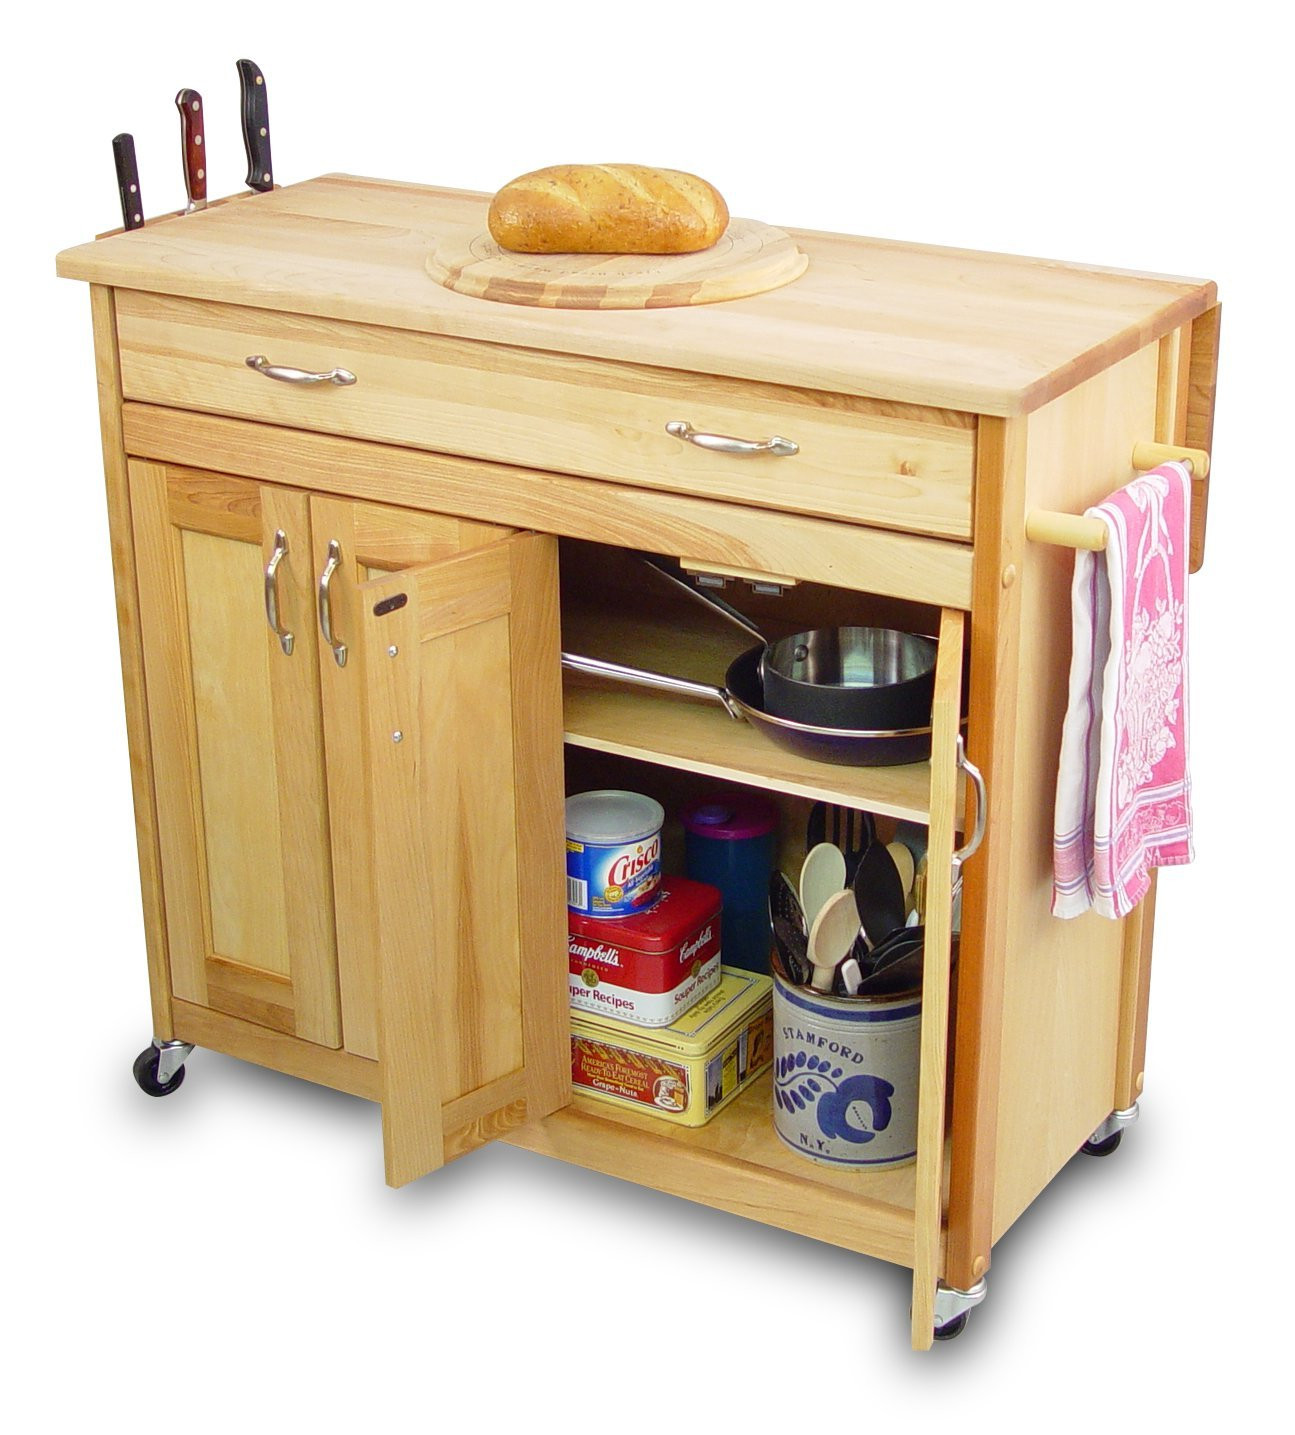 Storage Cabinet Kitchen
 Kitchen Storage Cabinets Design Inspiration Home Design